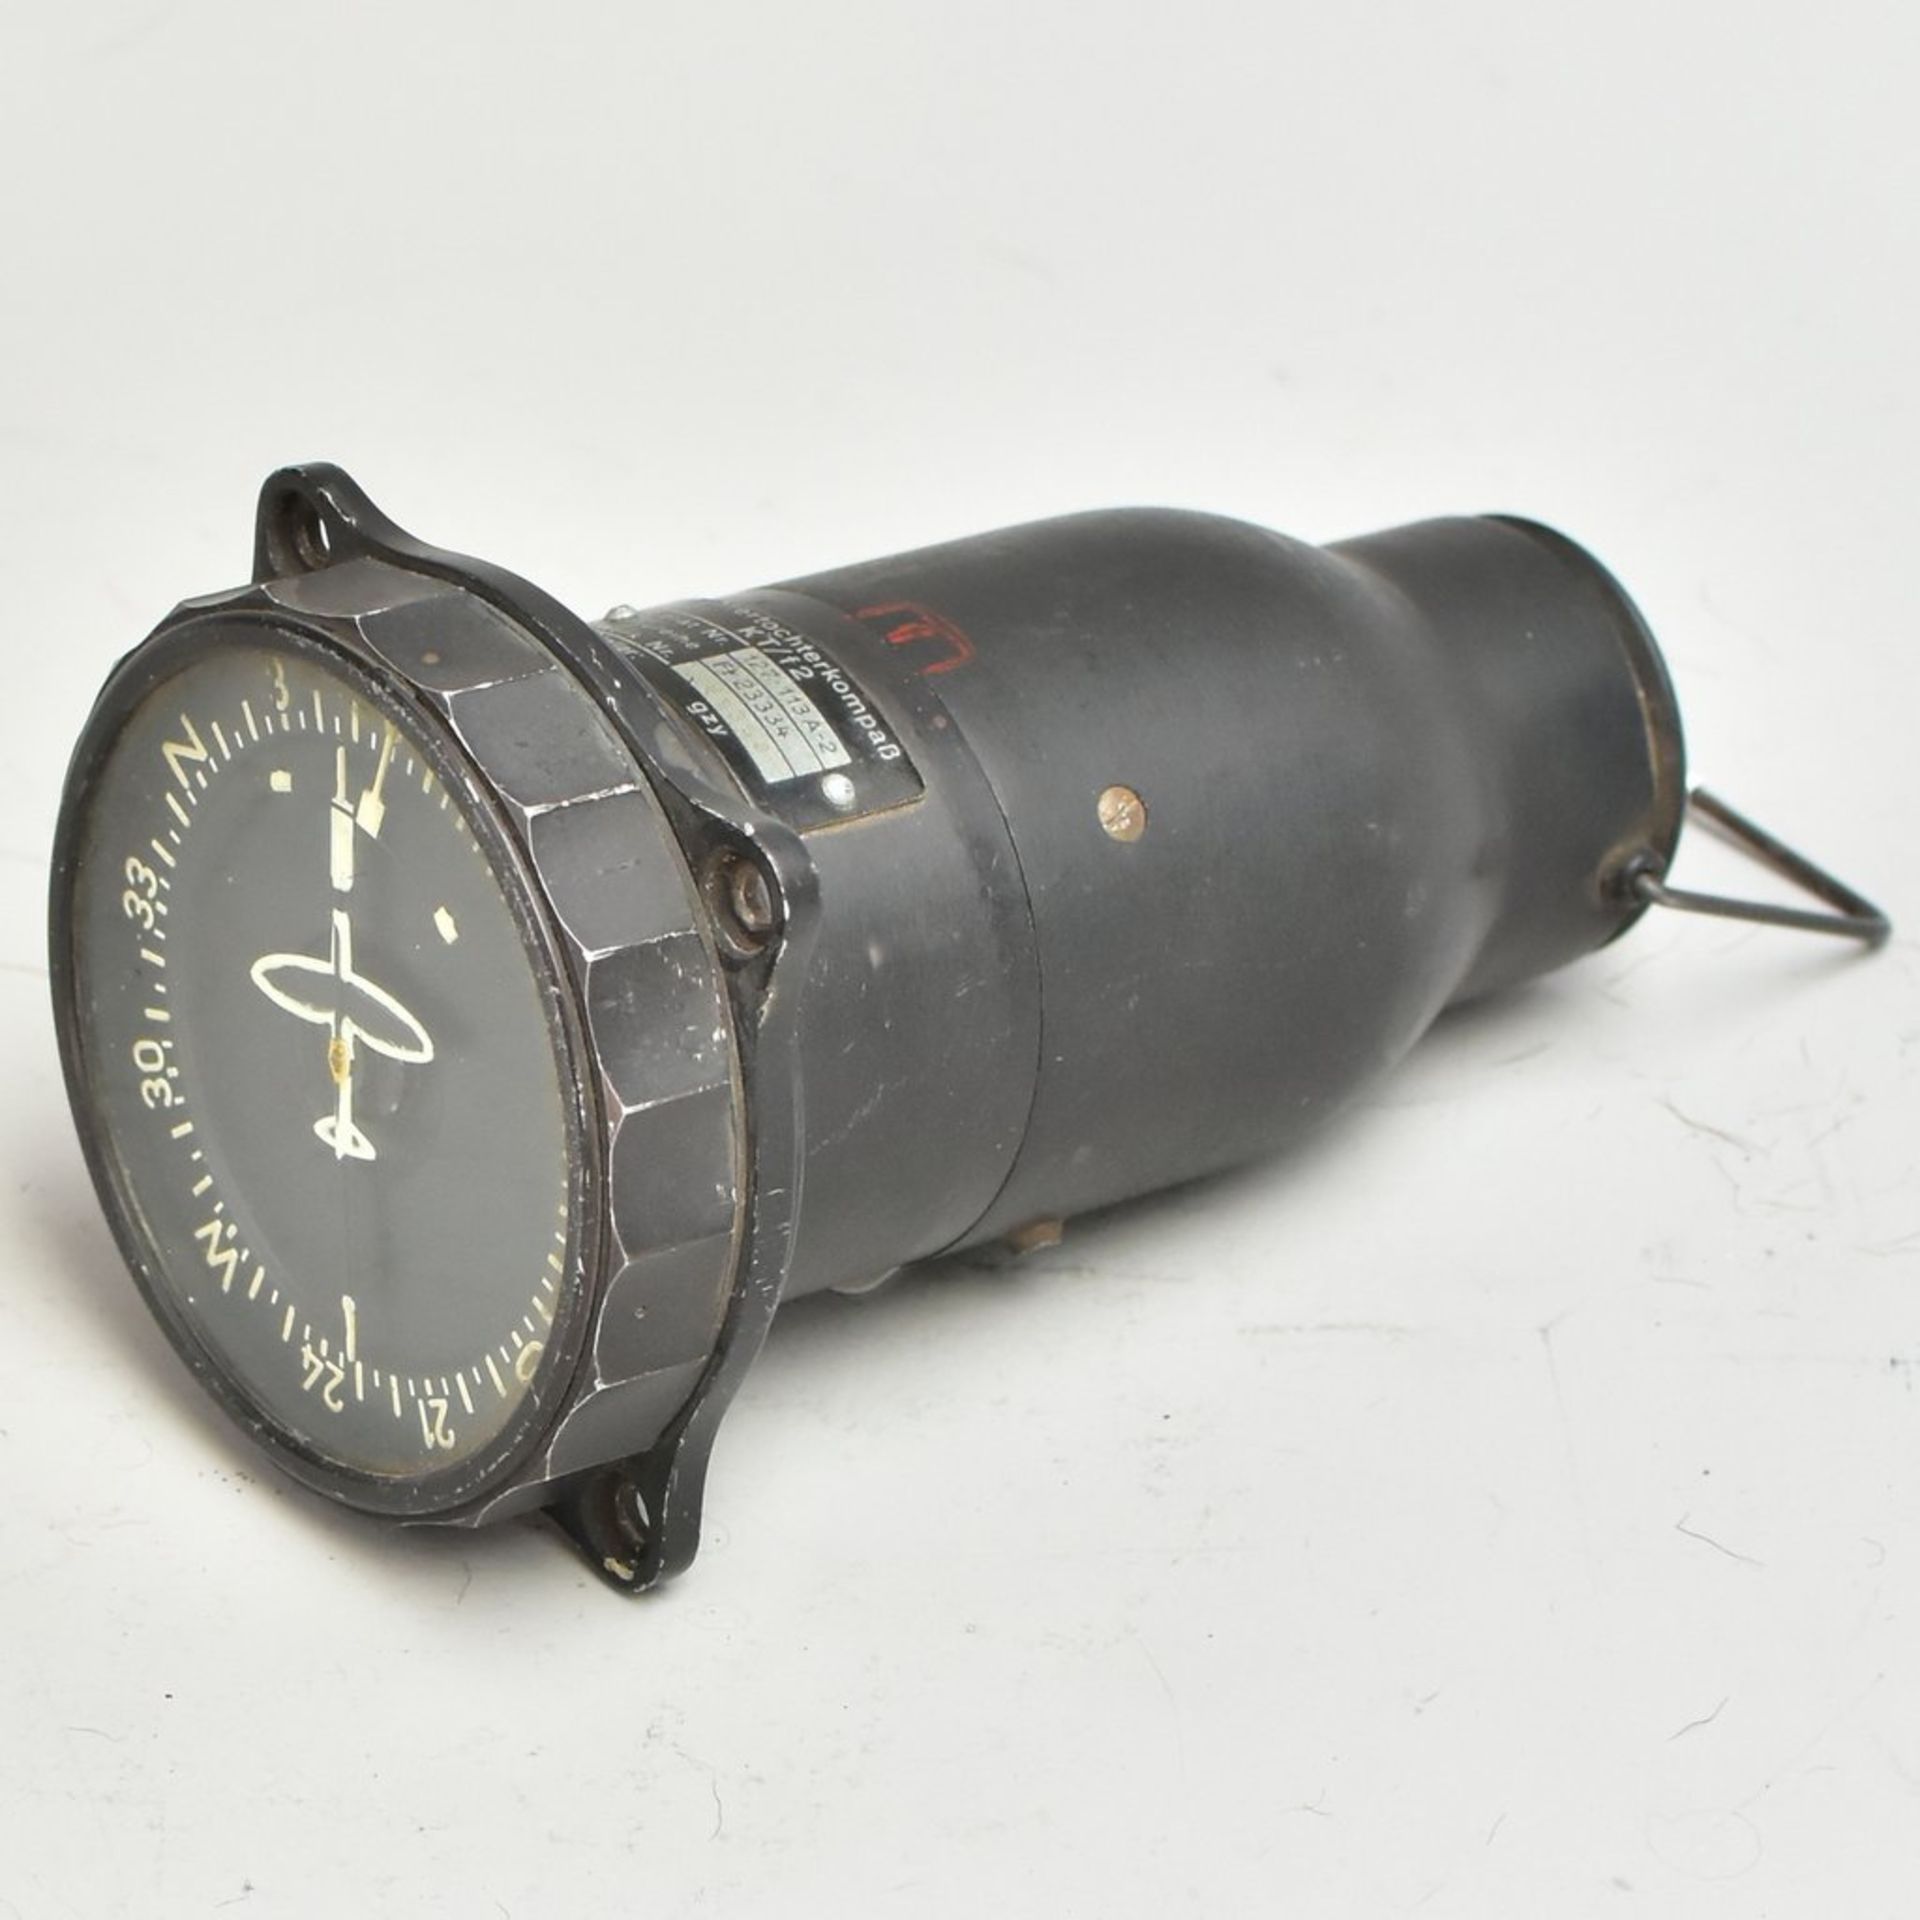 Führertochterkompass, Gerätenr. 127.113A-2, Baureihe FI . 23334, Bj 1945, Originalzustand,